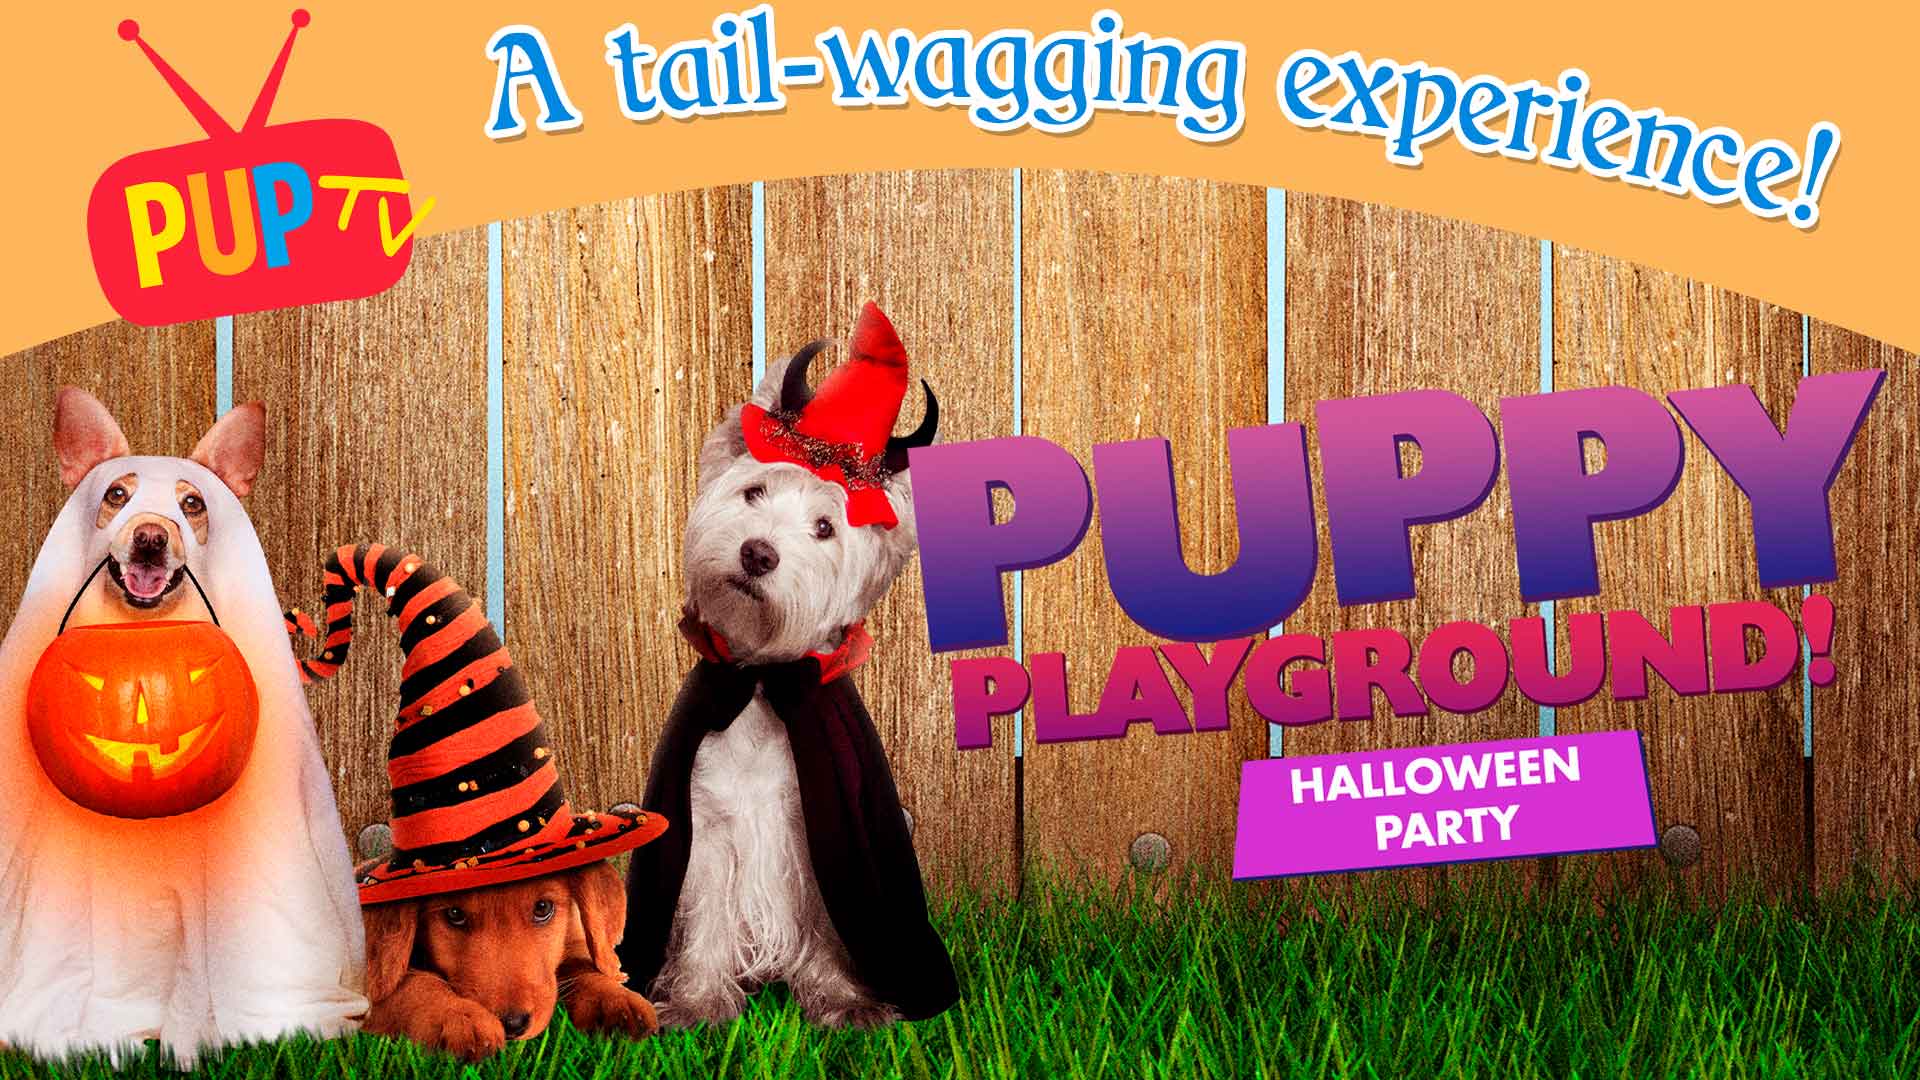 Puppy Playground: Halloween Party